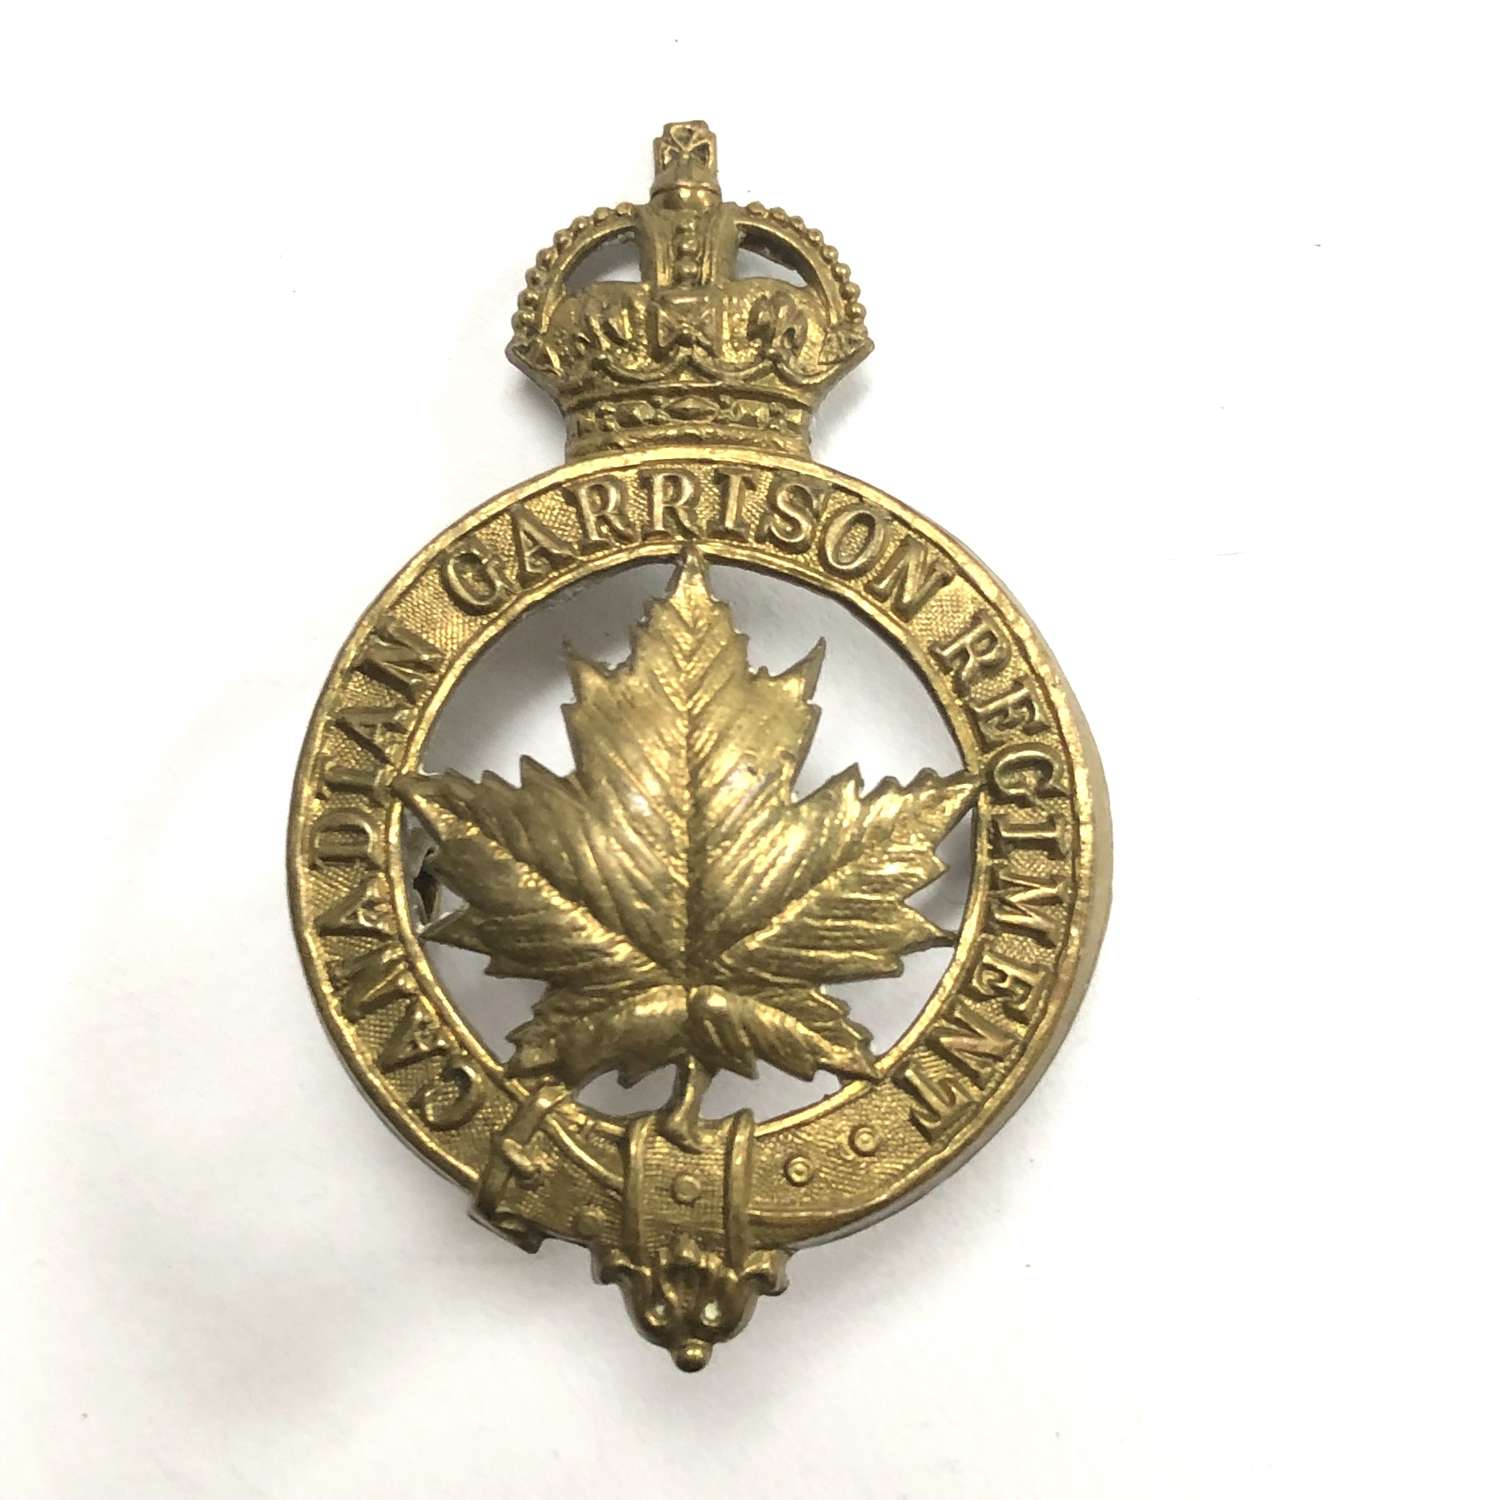 Canadian Garrison Regiment cap badge by Rondeau, Quebec